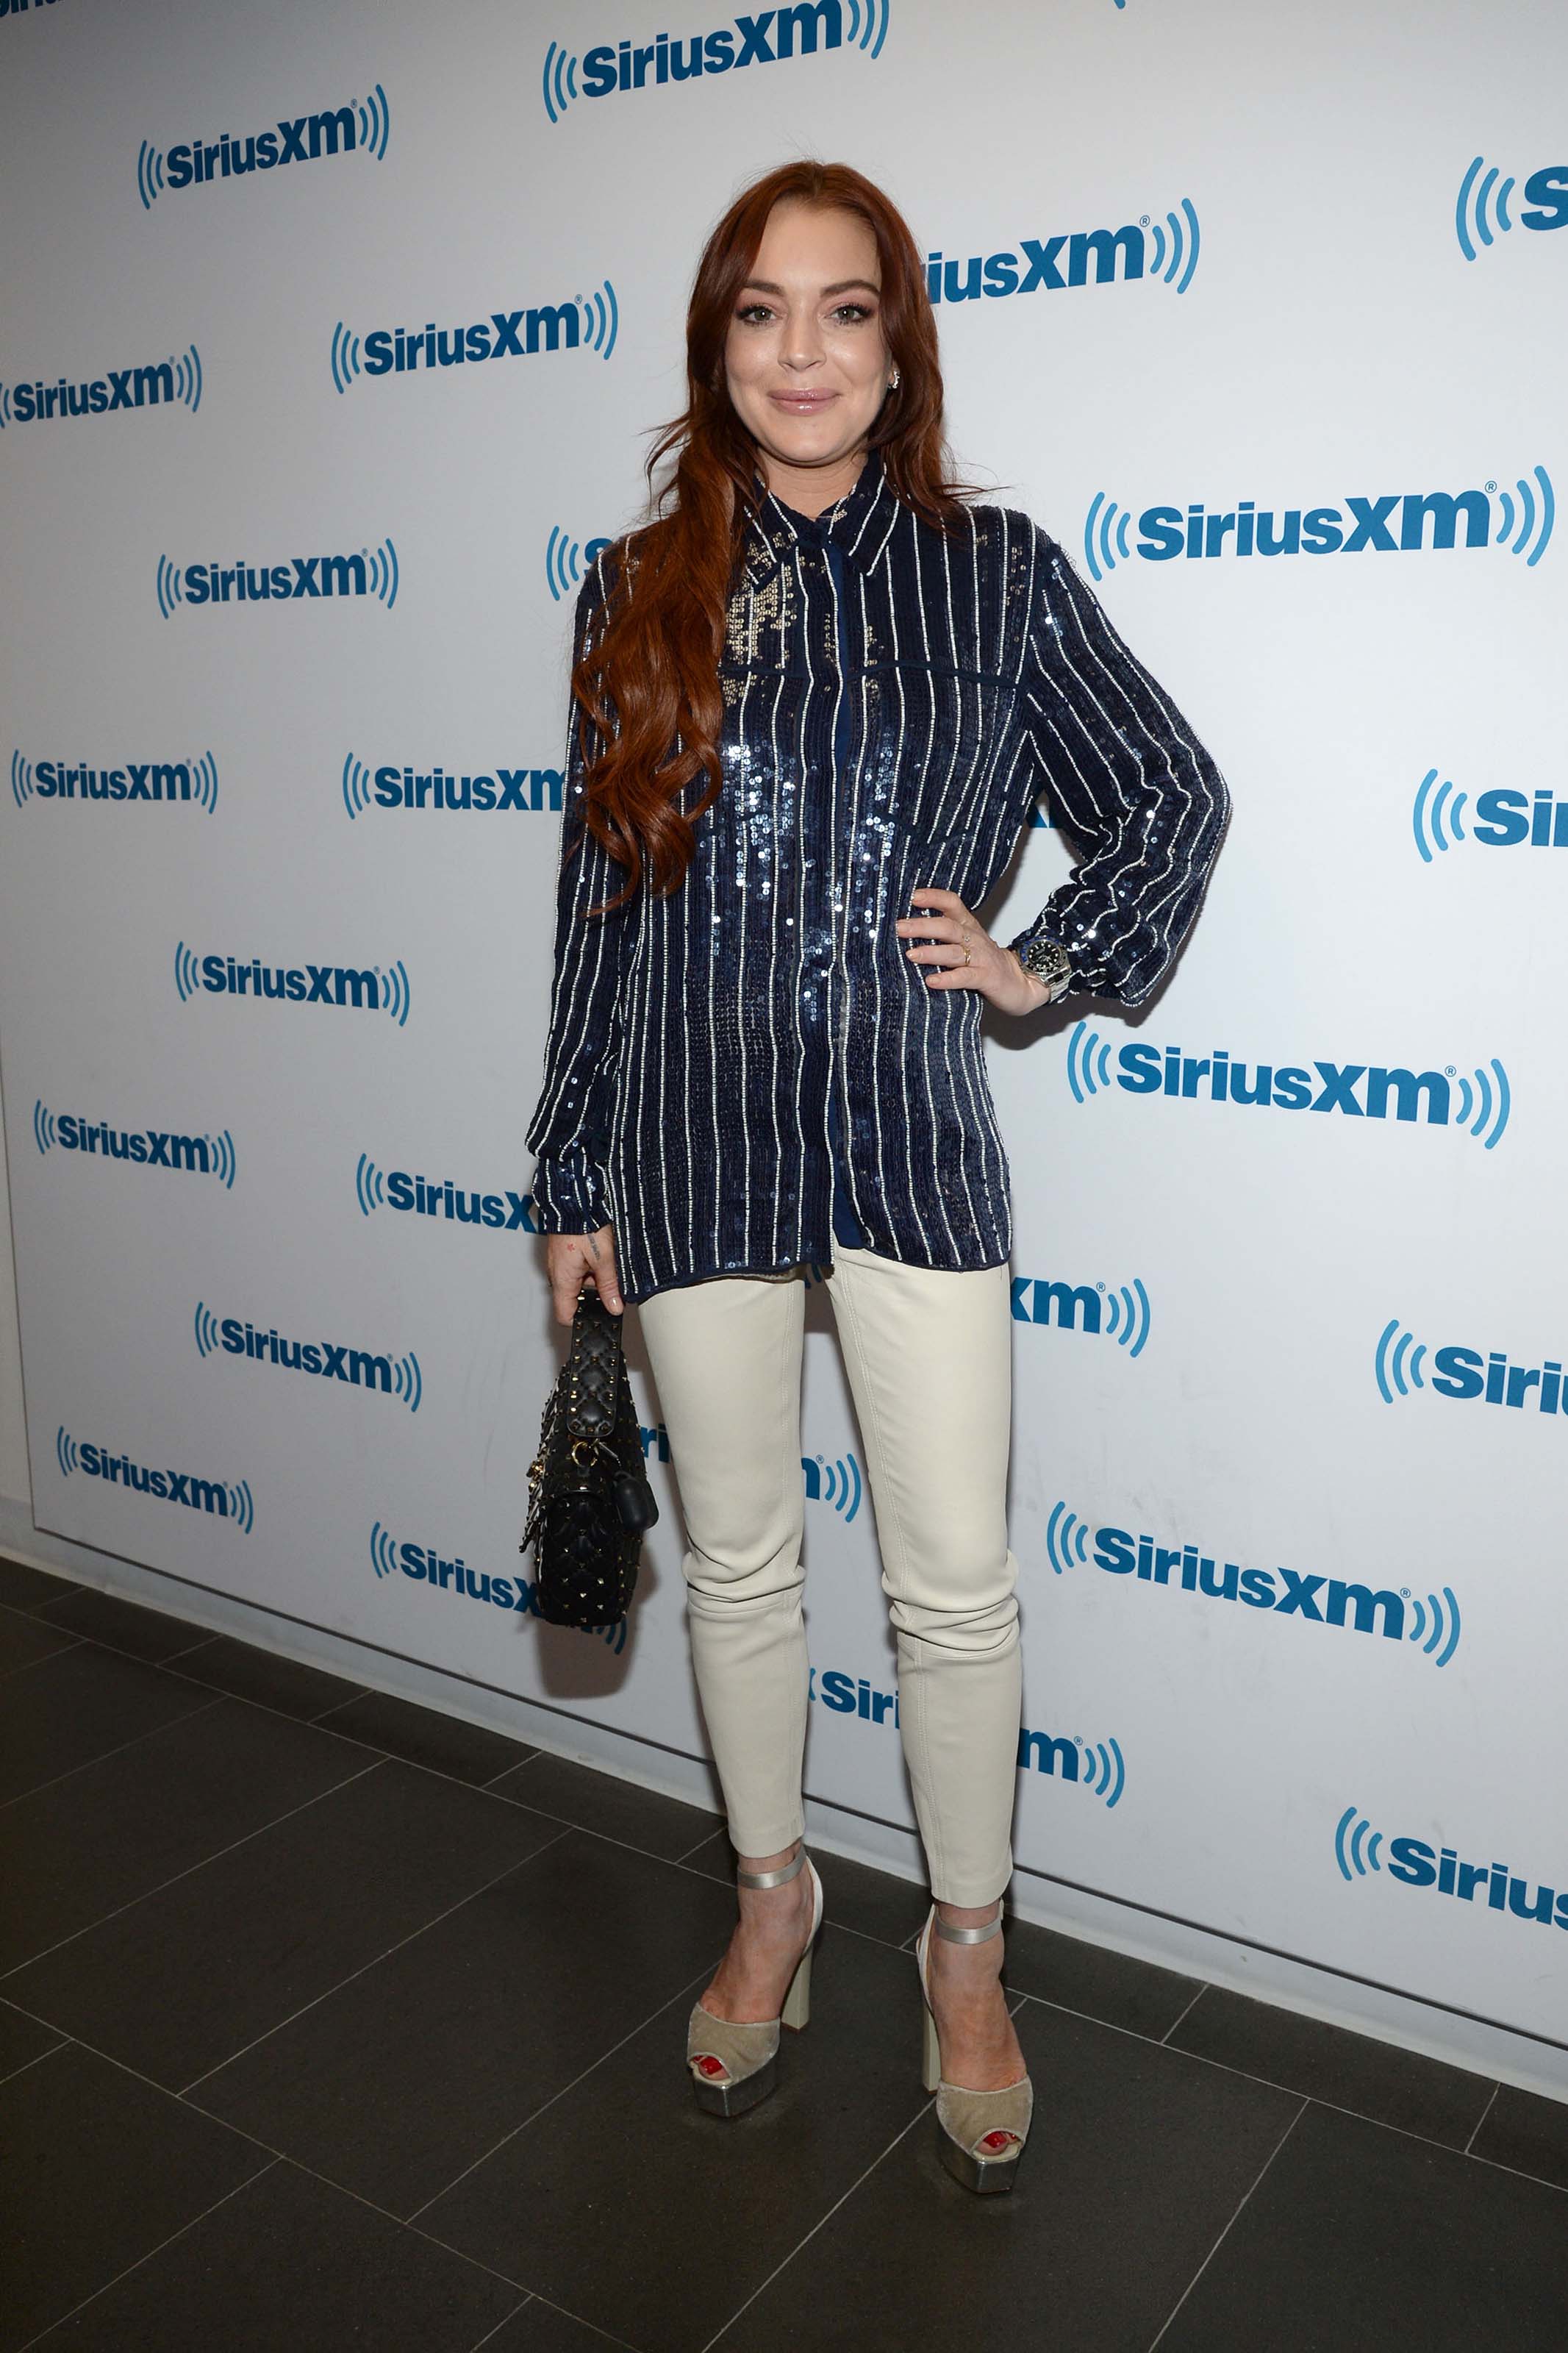 Lindsay Lohan at SiriusXM studios